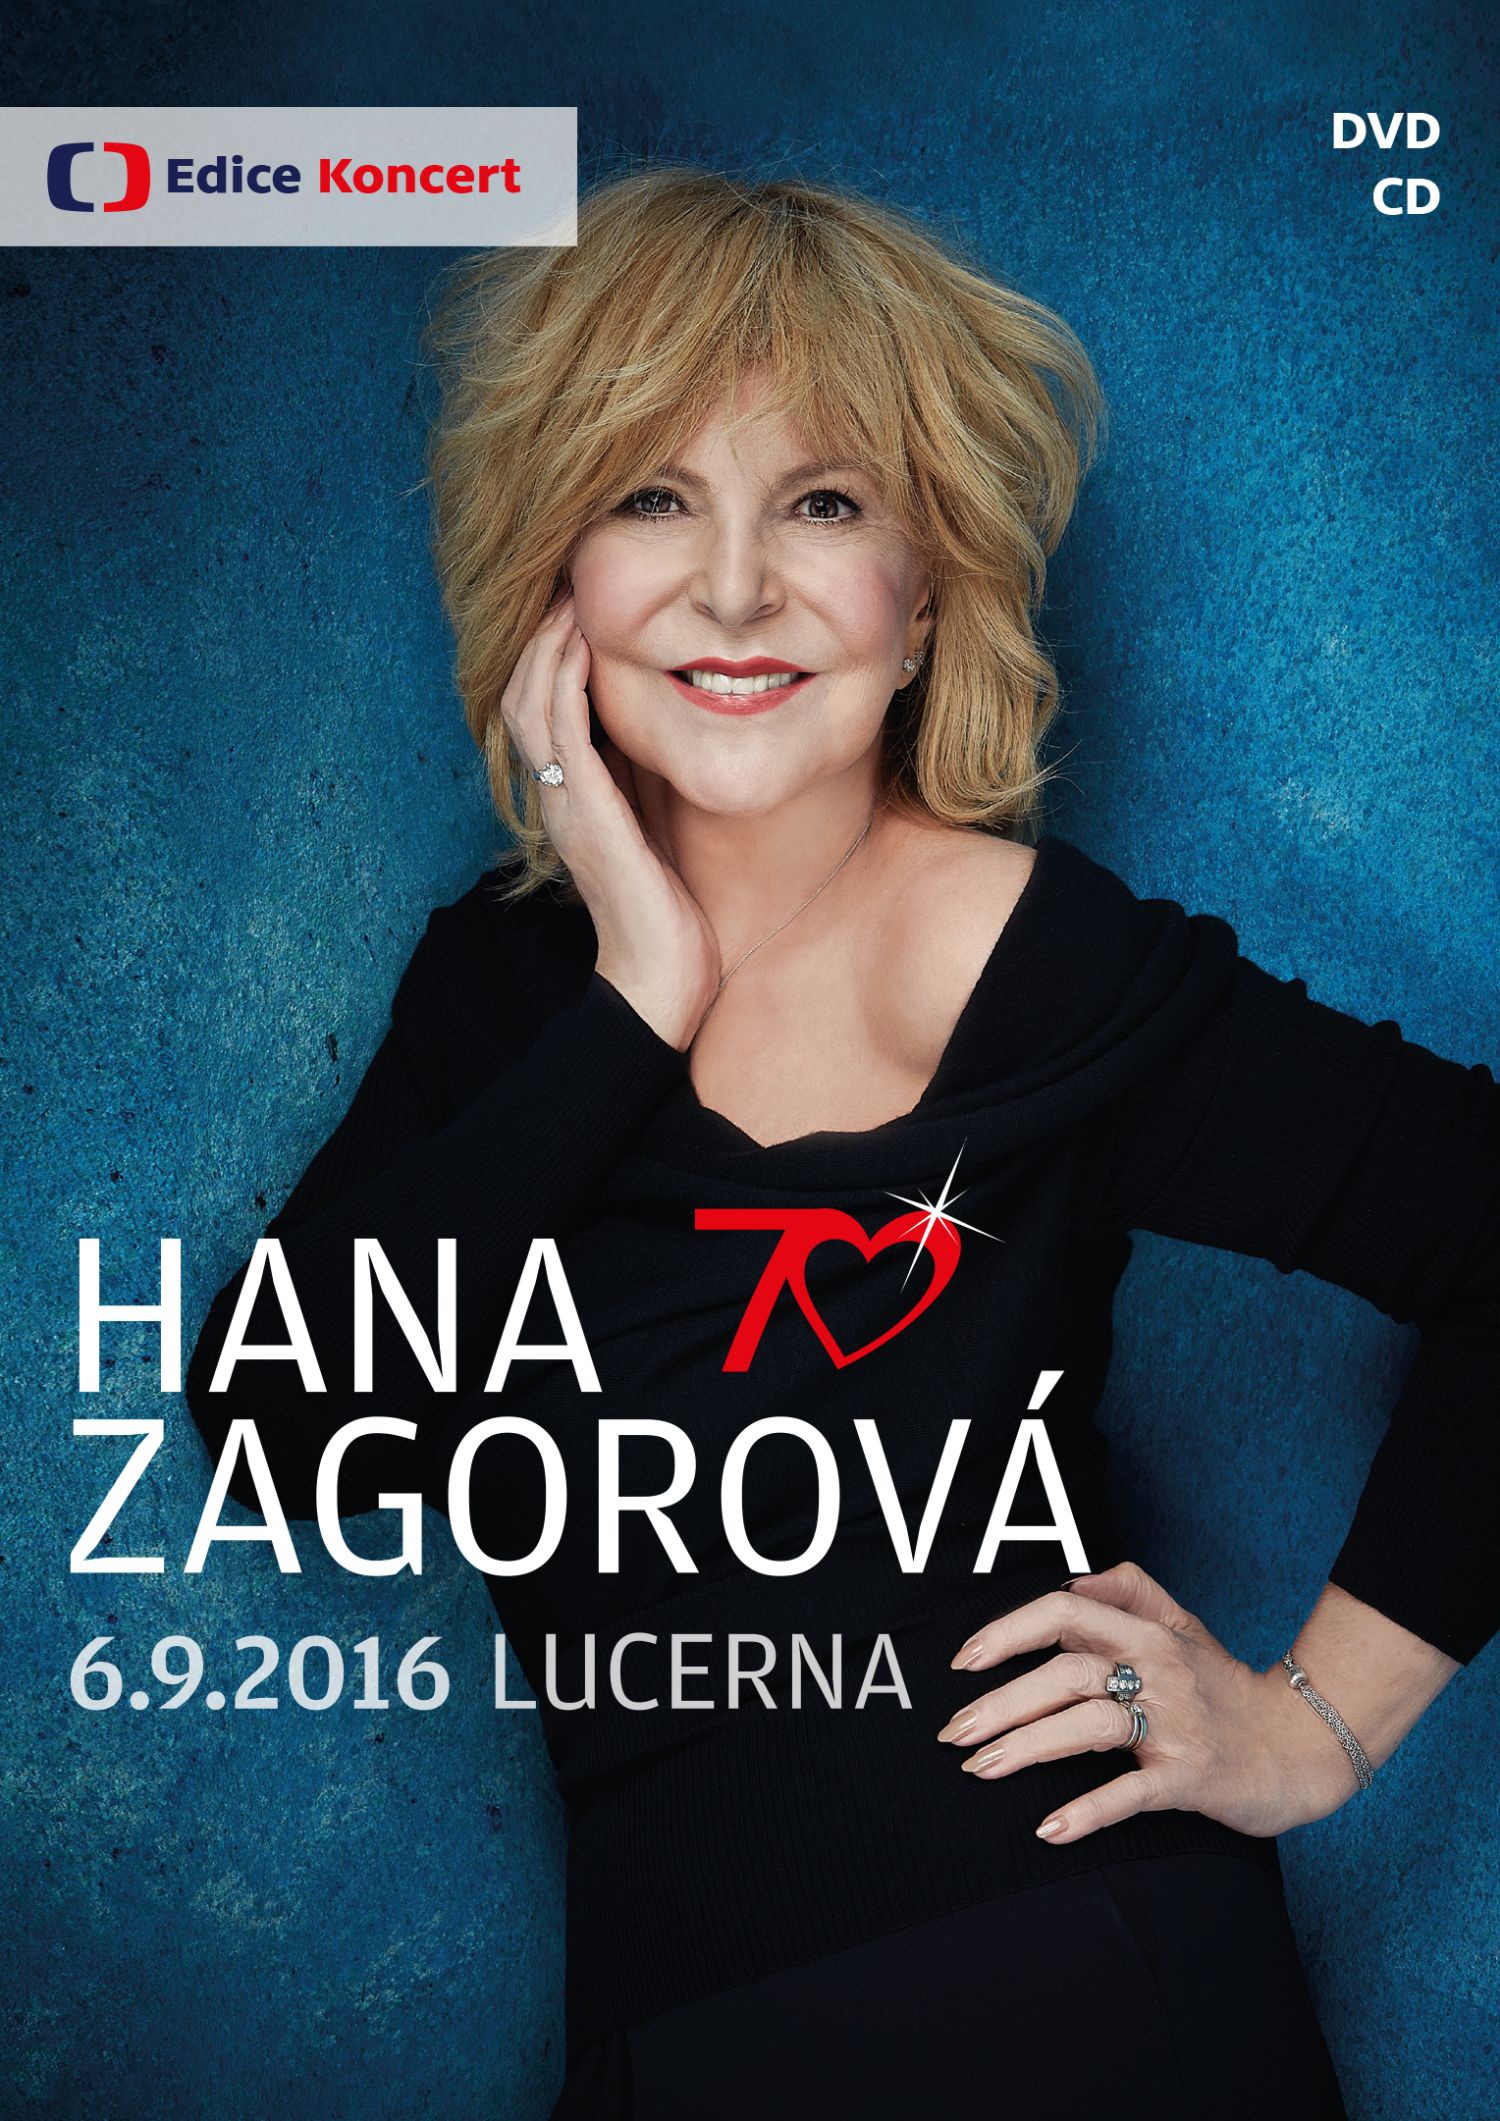 CD Shop - ZAGOROVA HANA 70